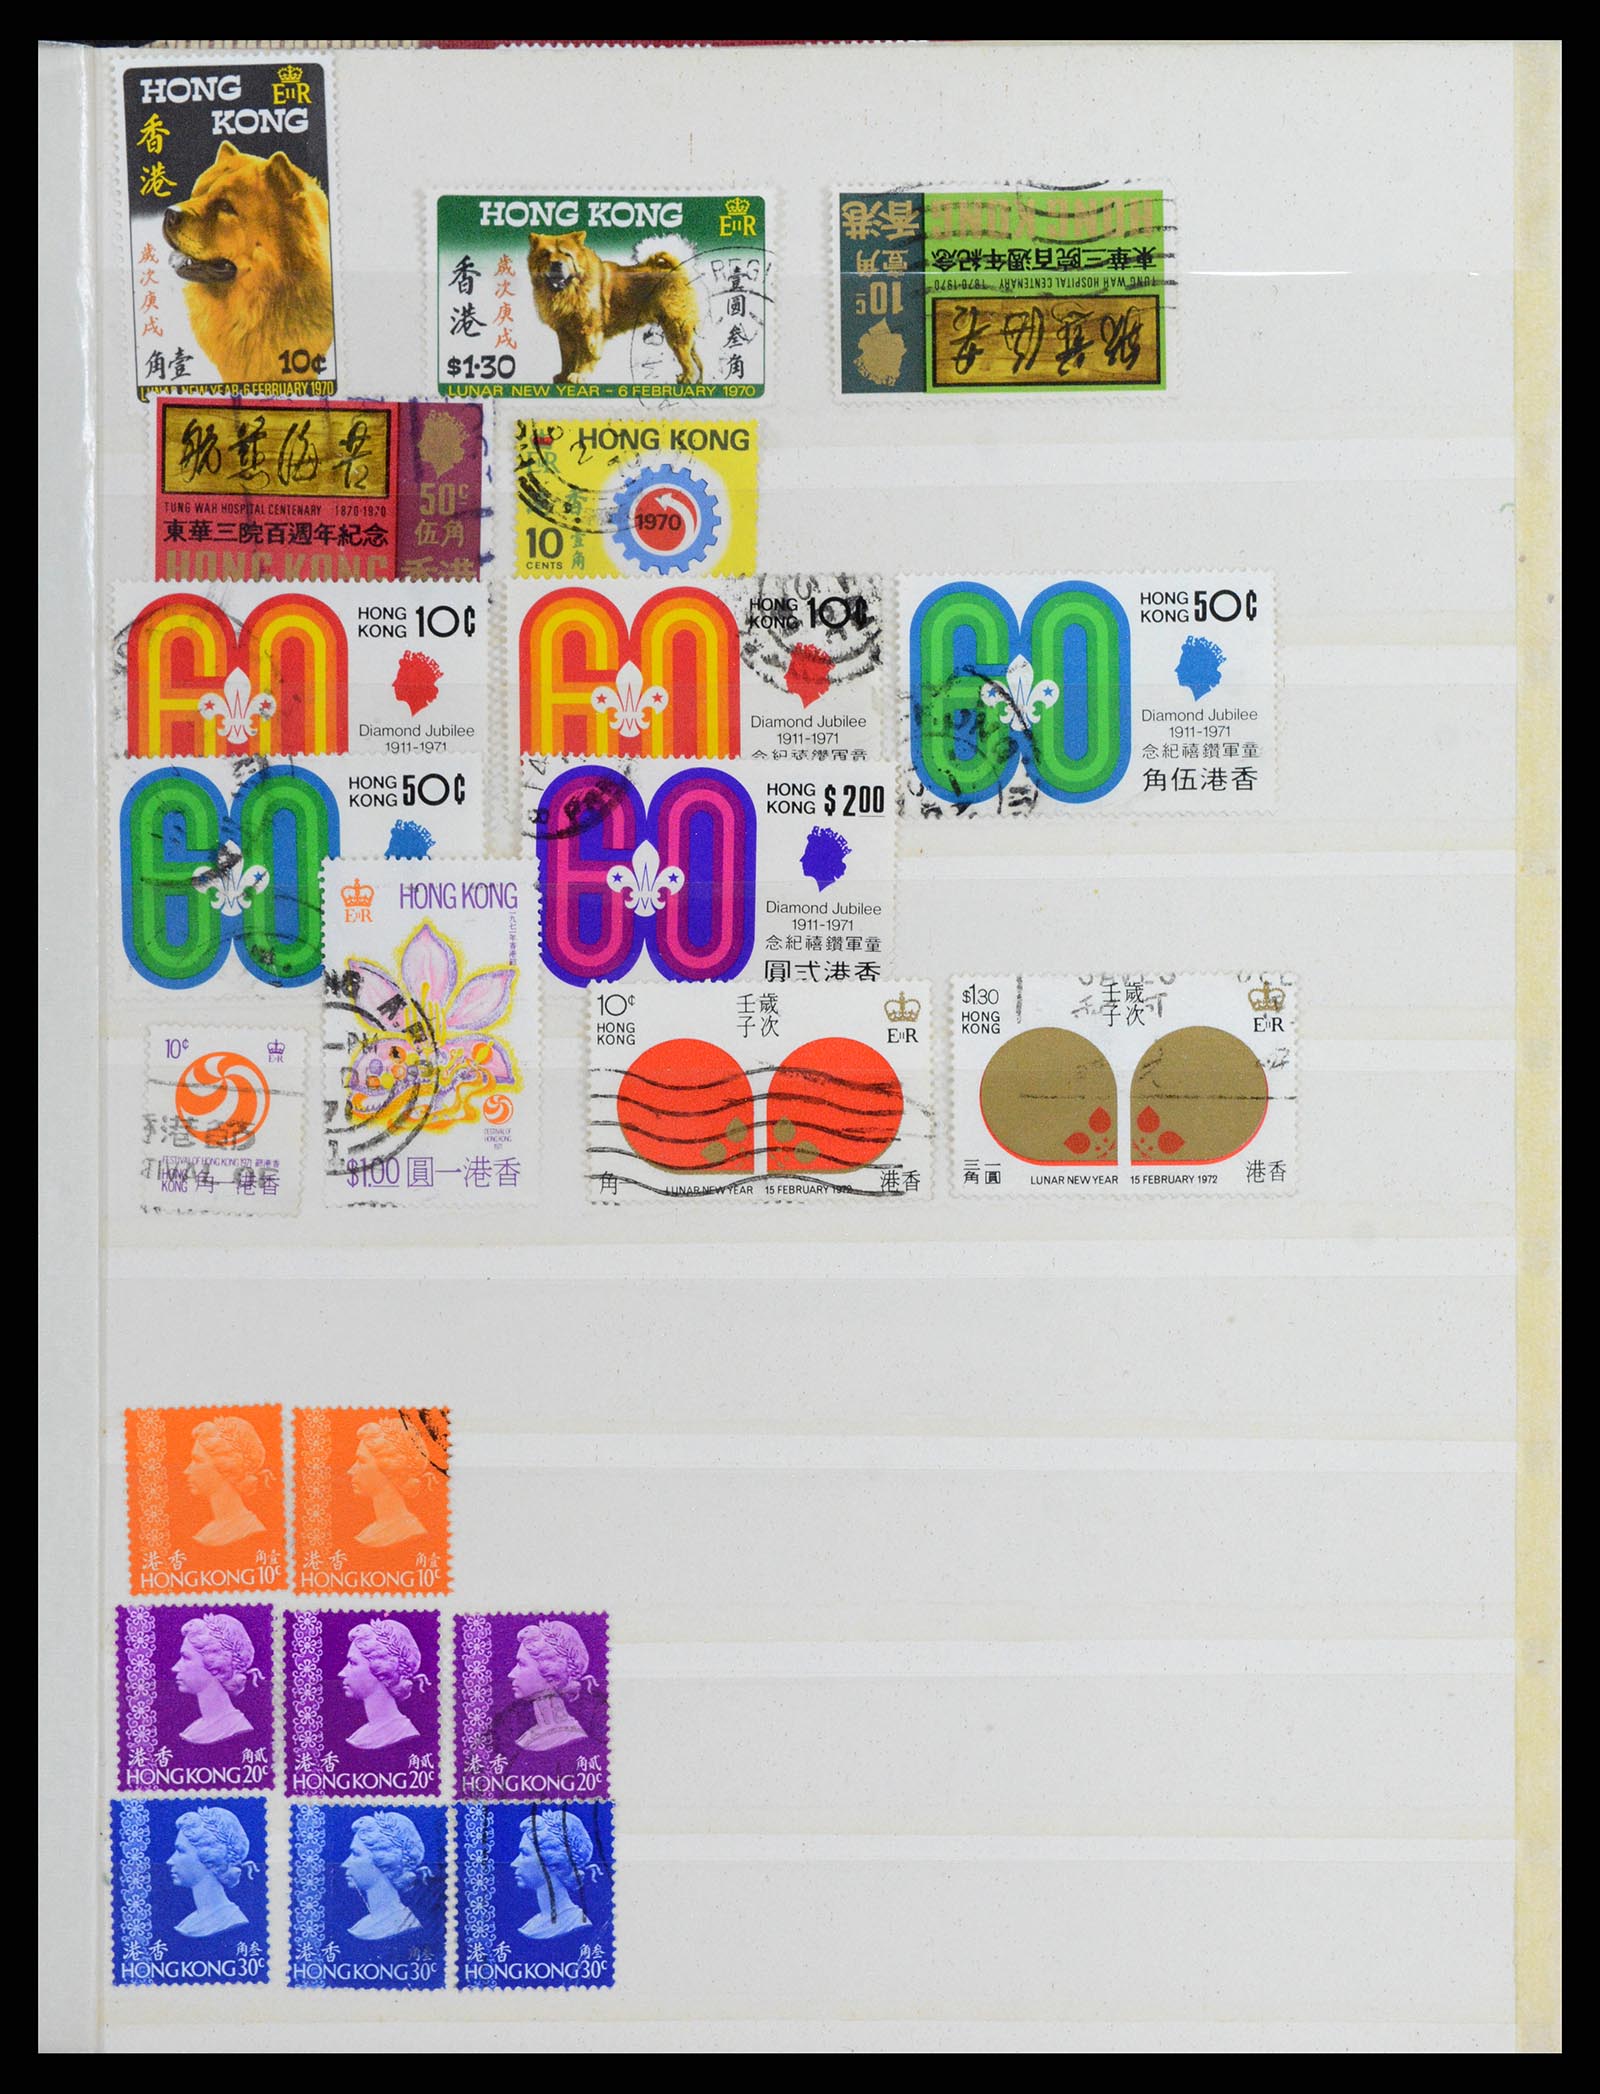 37358 021 - Stamp collection 37358 Hong Kong 1861-1997.